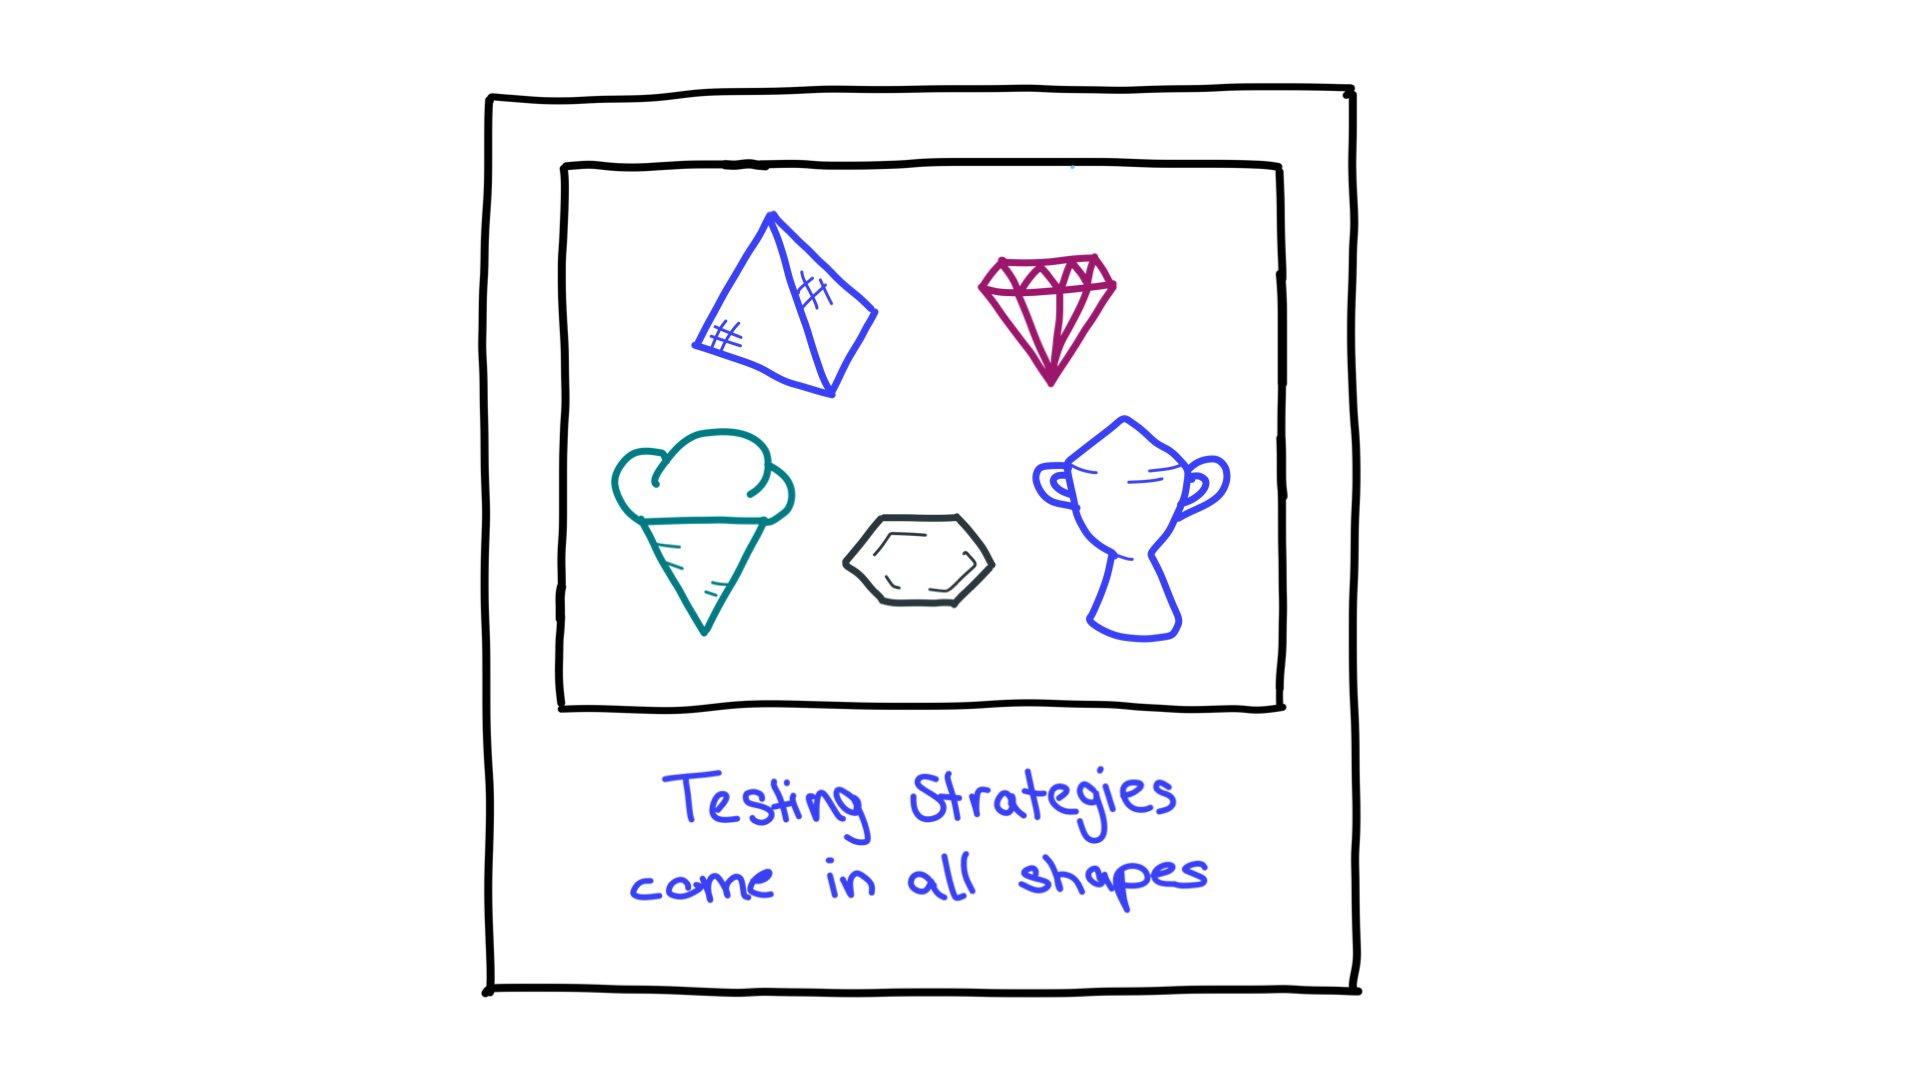 Algunos ejemplos de pruebas de formas de estrategias: una pirámide, un diamante cortado, un cono de helado, un hexágono y un trofeo.